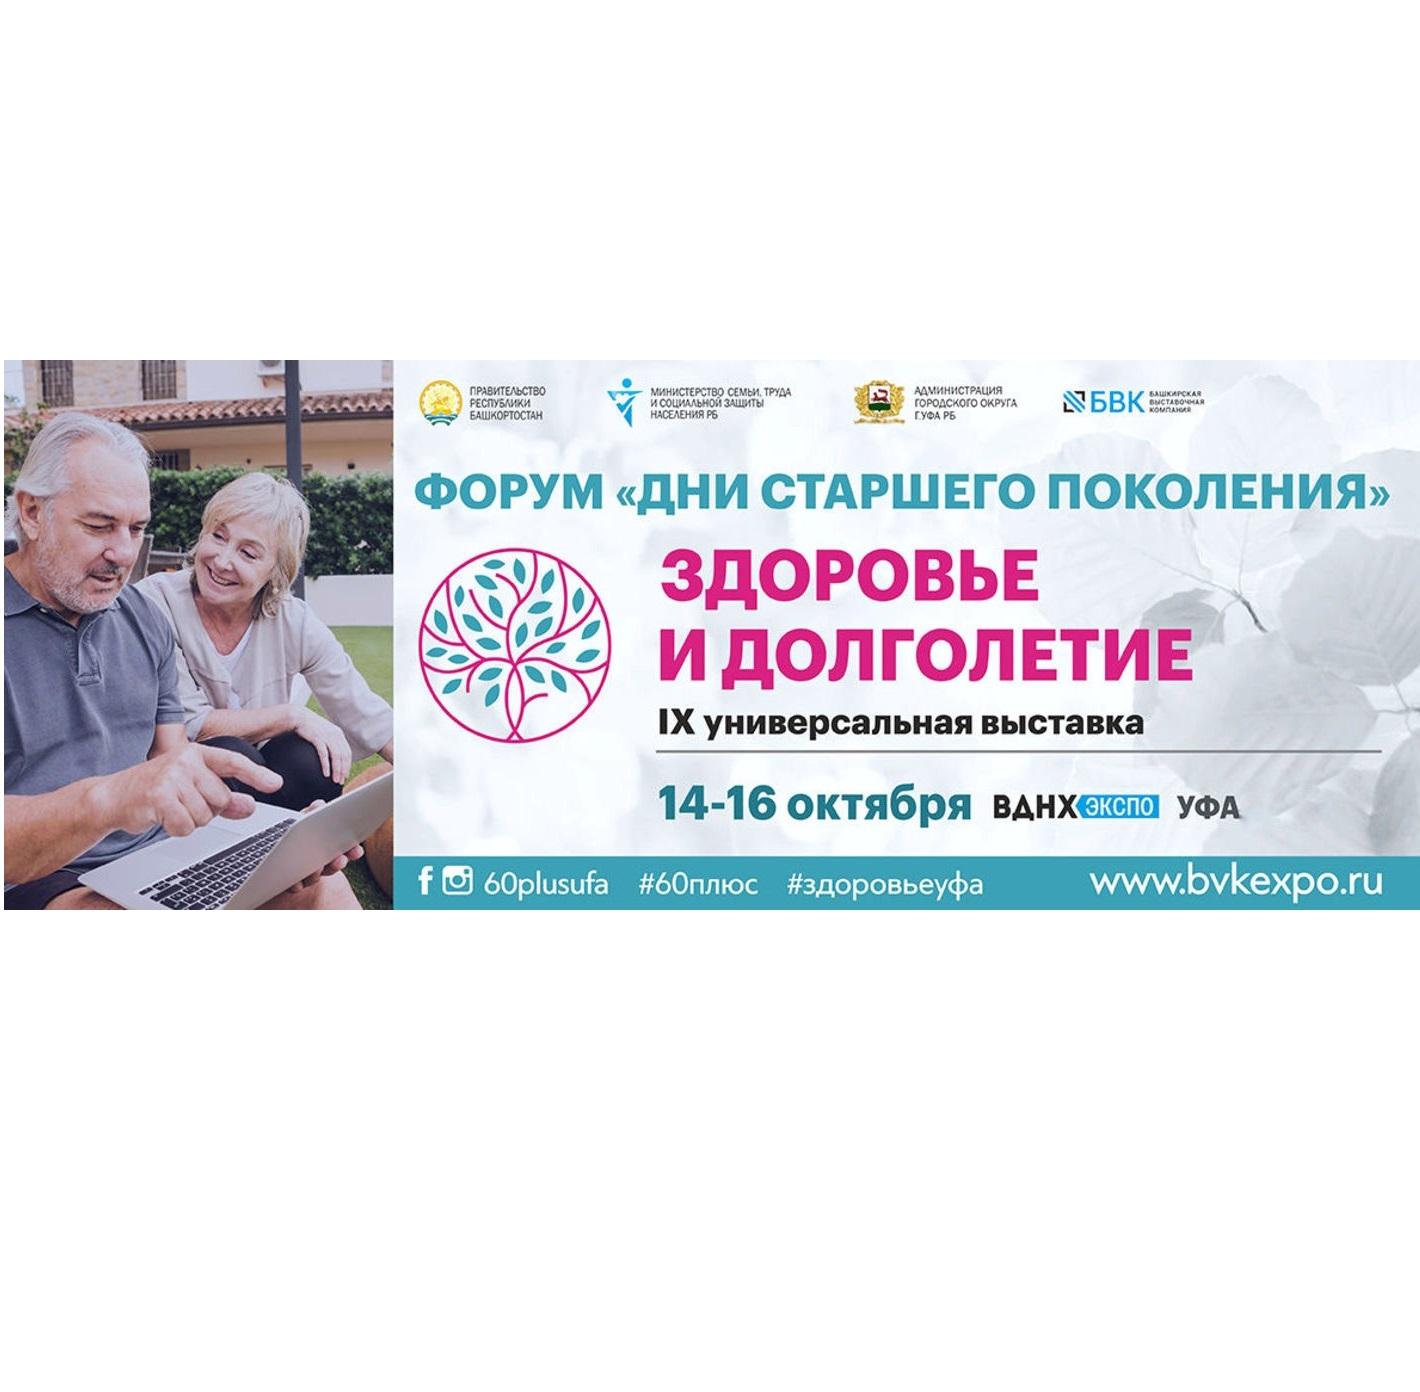 14-16 октября, 2021 г. Форум «Дни старшего поколения», специализированная выставка «Здоровье и долголетие»